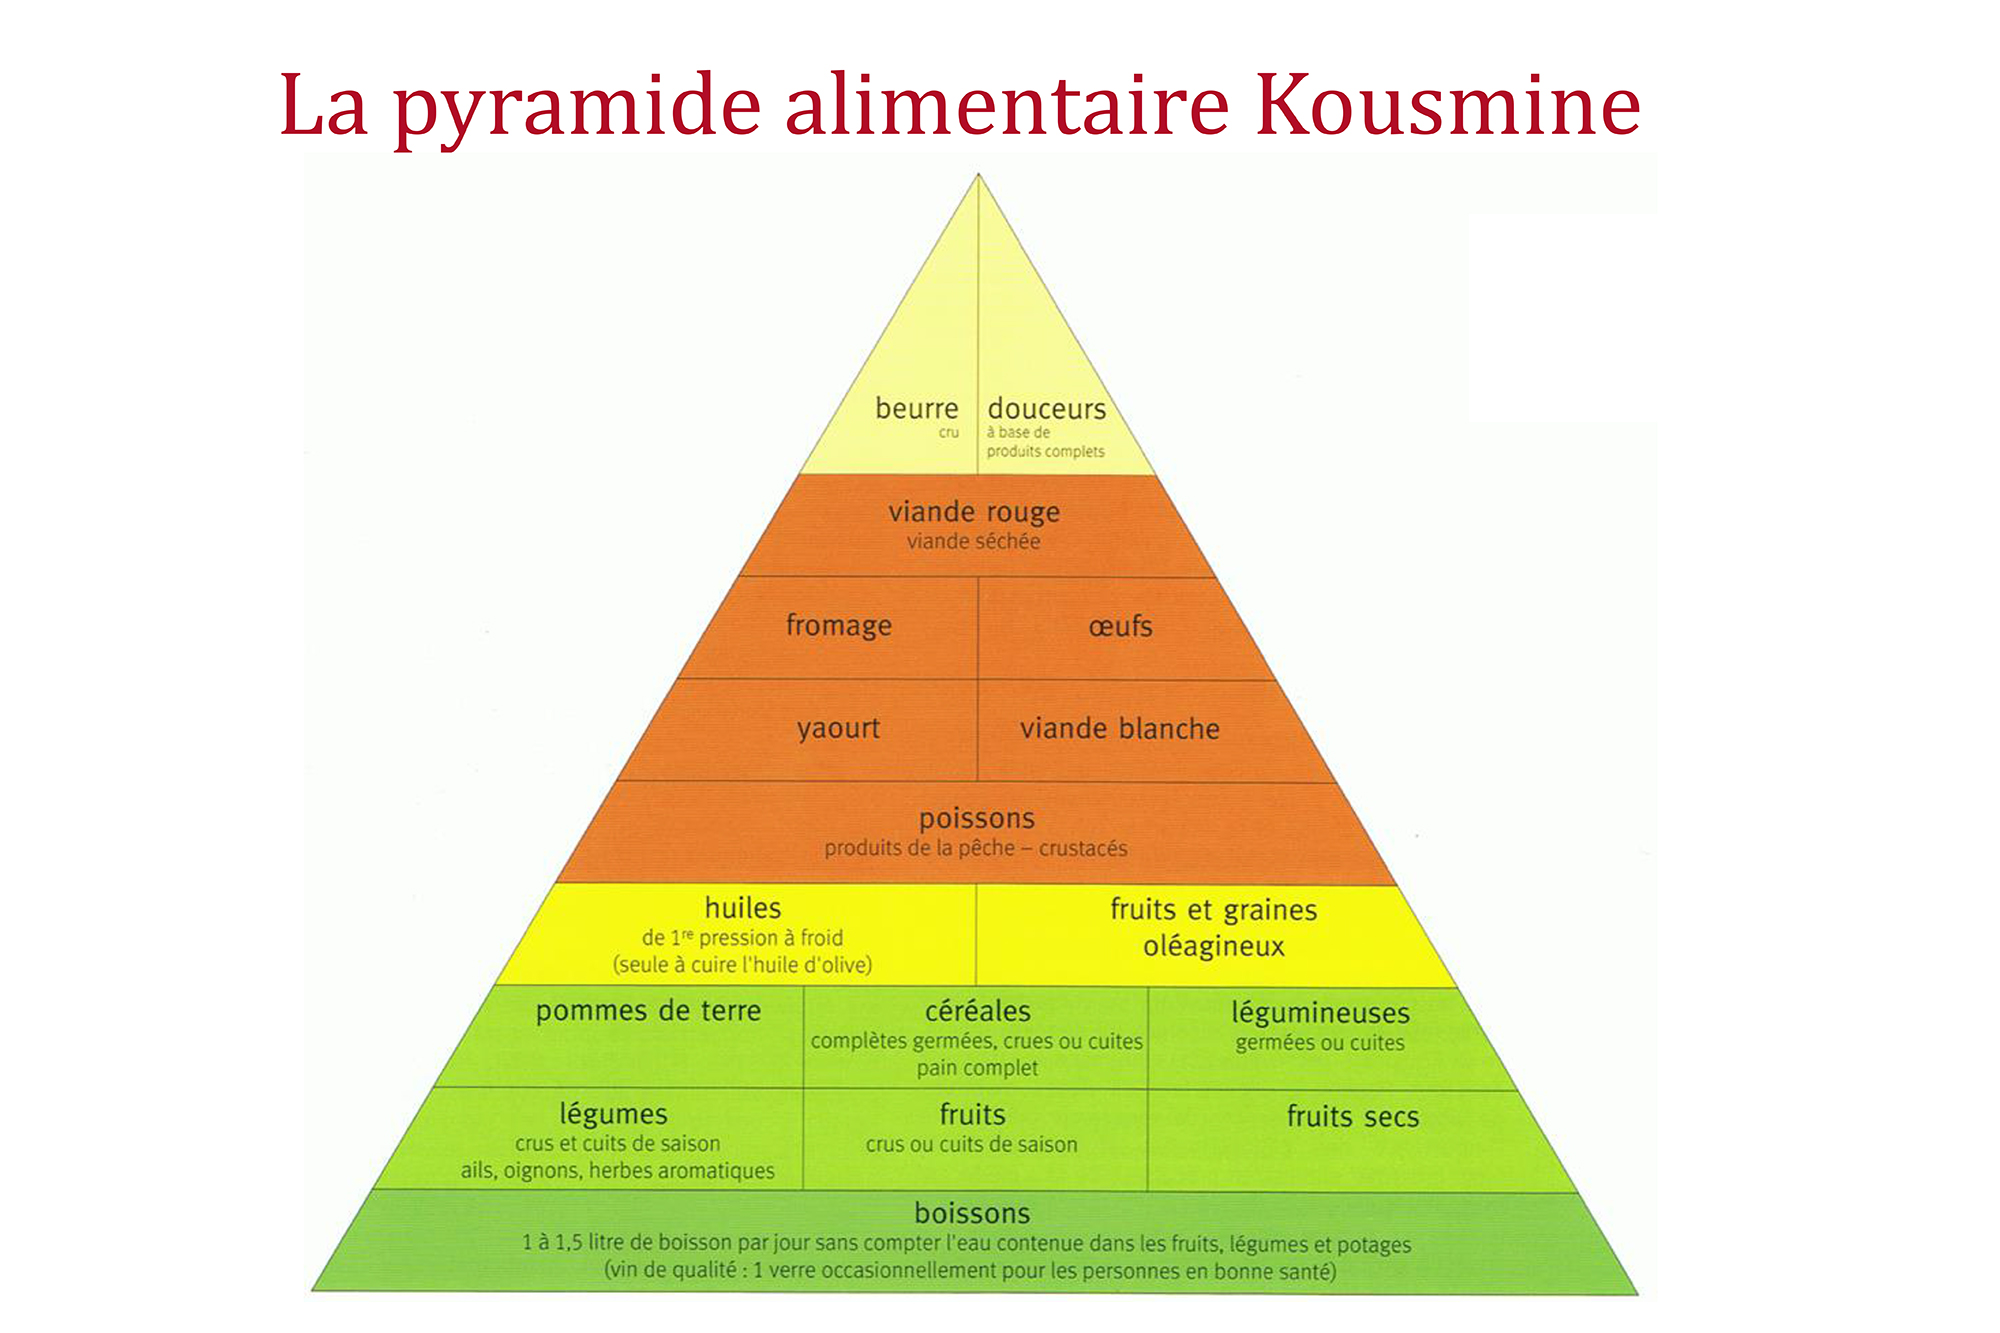 La pyramide alimentaire Kousmine